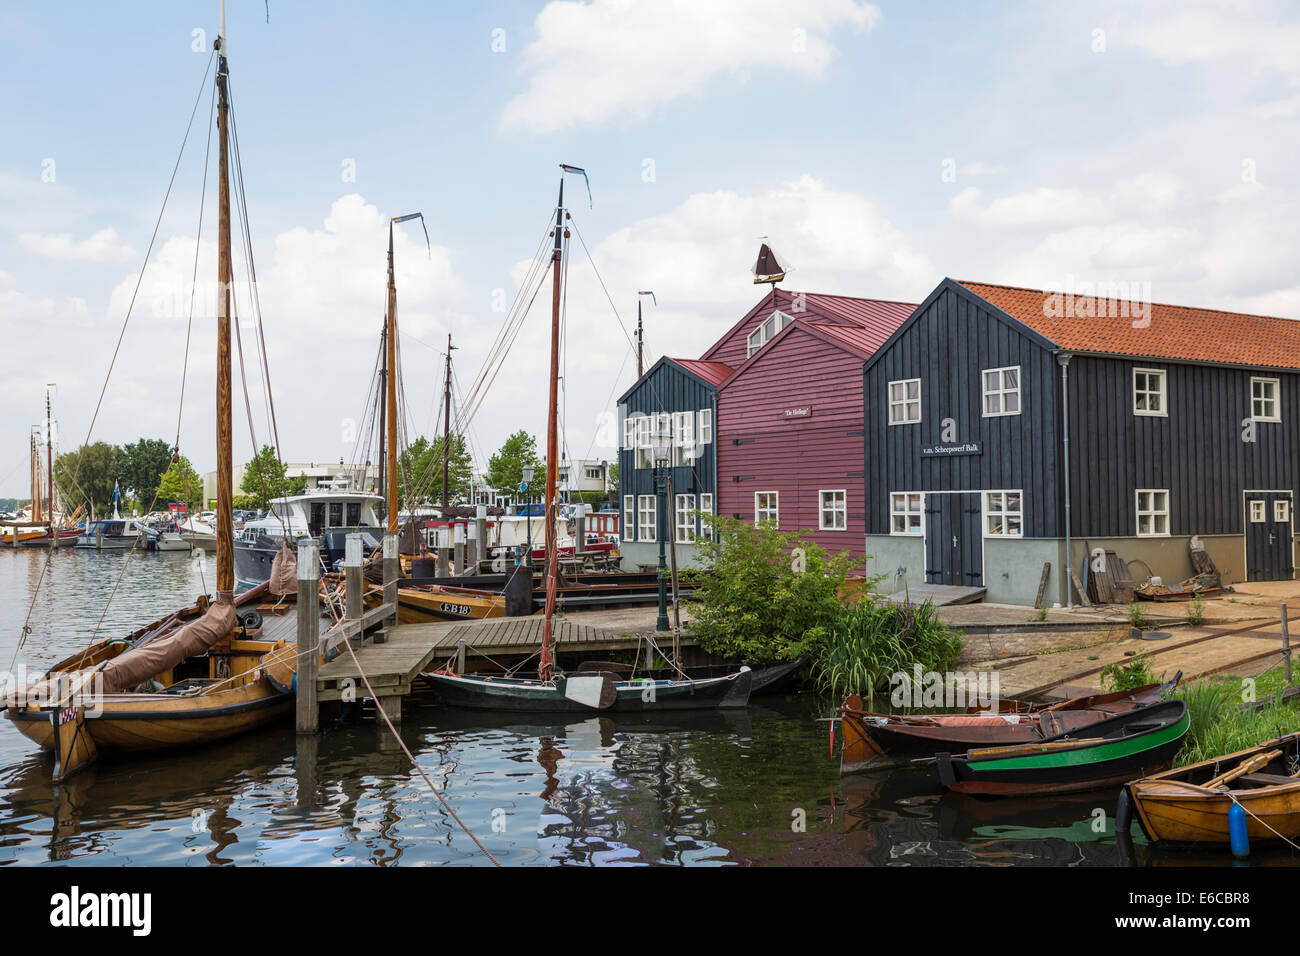 Porto di Elburg, una vecchia storica città anseatica nei Paesi Bassi, con il vecchio legno barche da pesca. Foto Stock